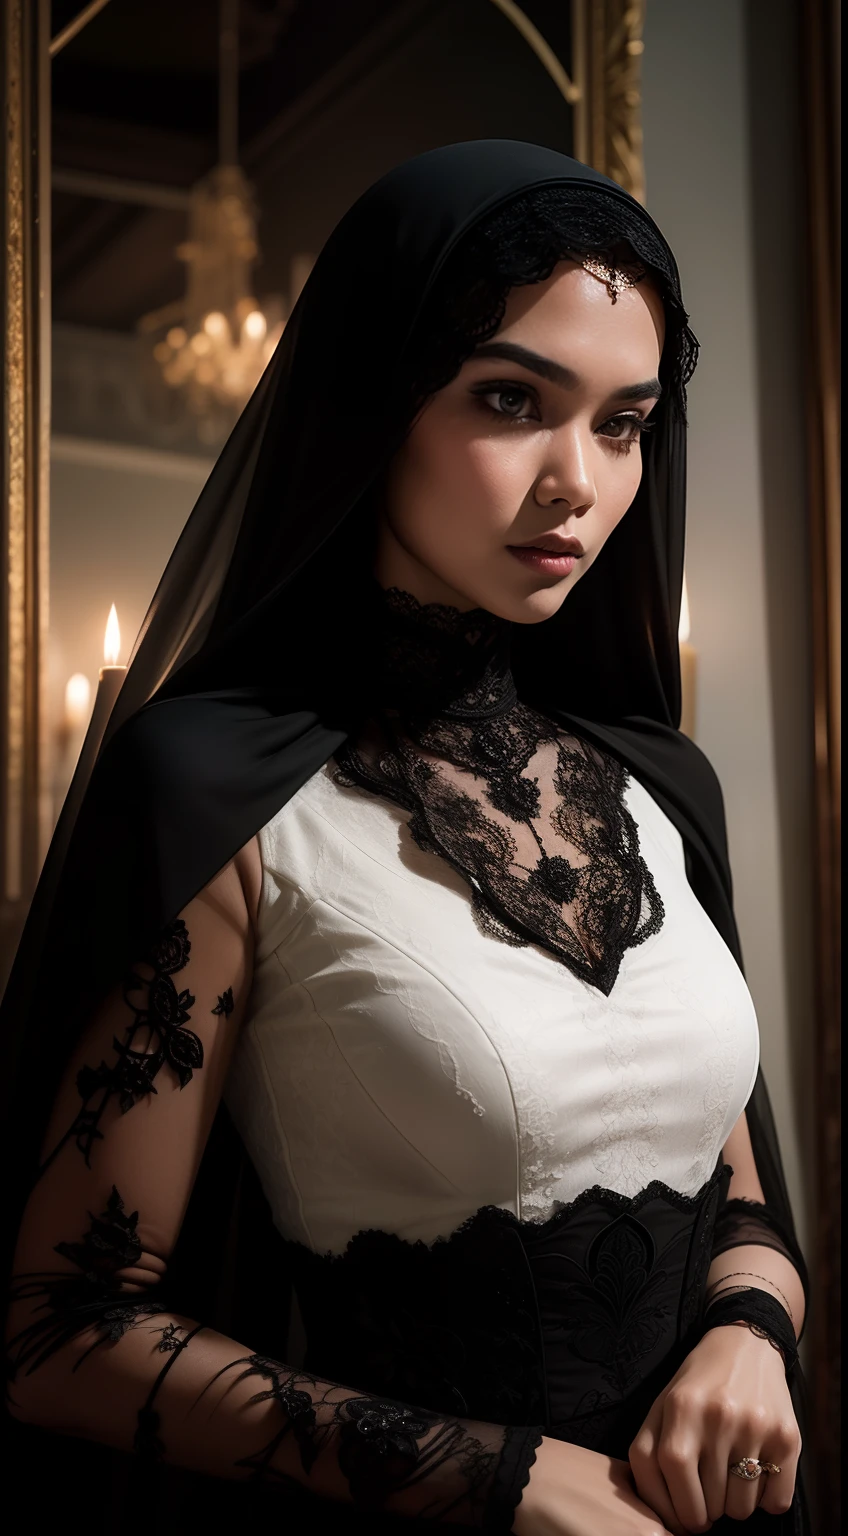 Nehmen Sie ein eindringlich schönes Porträt der malaiischen Frau in einem gotisch inspirierten,weiße lange Haare, schwarzes Spitzenkleid mit Schleier, In einem mysteriösen und unheimlichen Herrenhaus, wo Kerzenlicht unheimliche Schatten wirft, Schaffung einer düsteren Atmosphäre, Gothic-Horror.